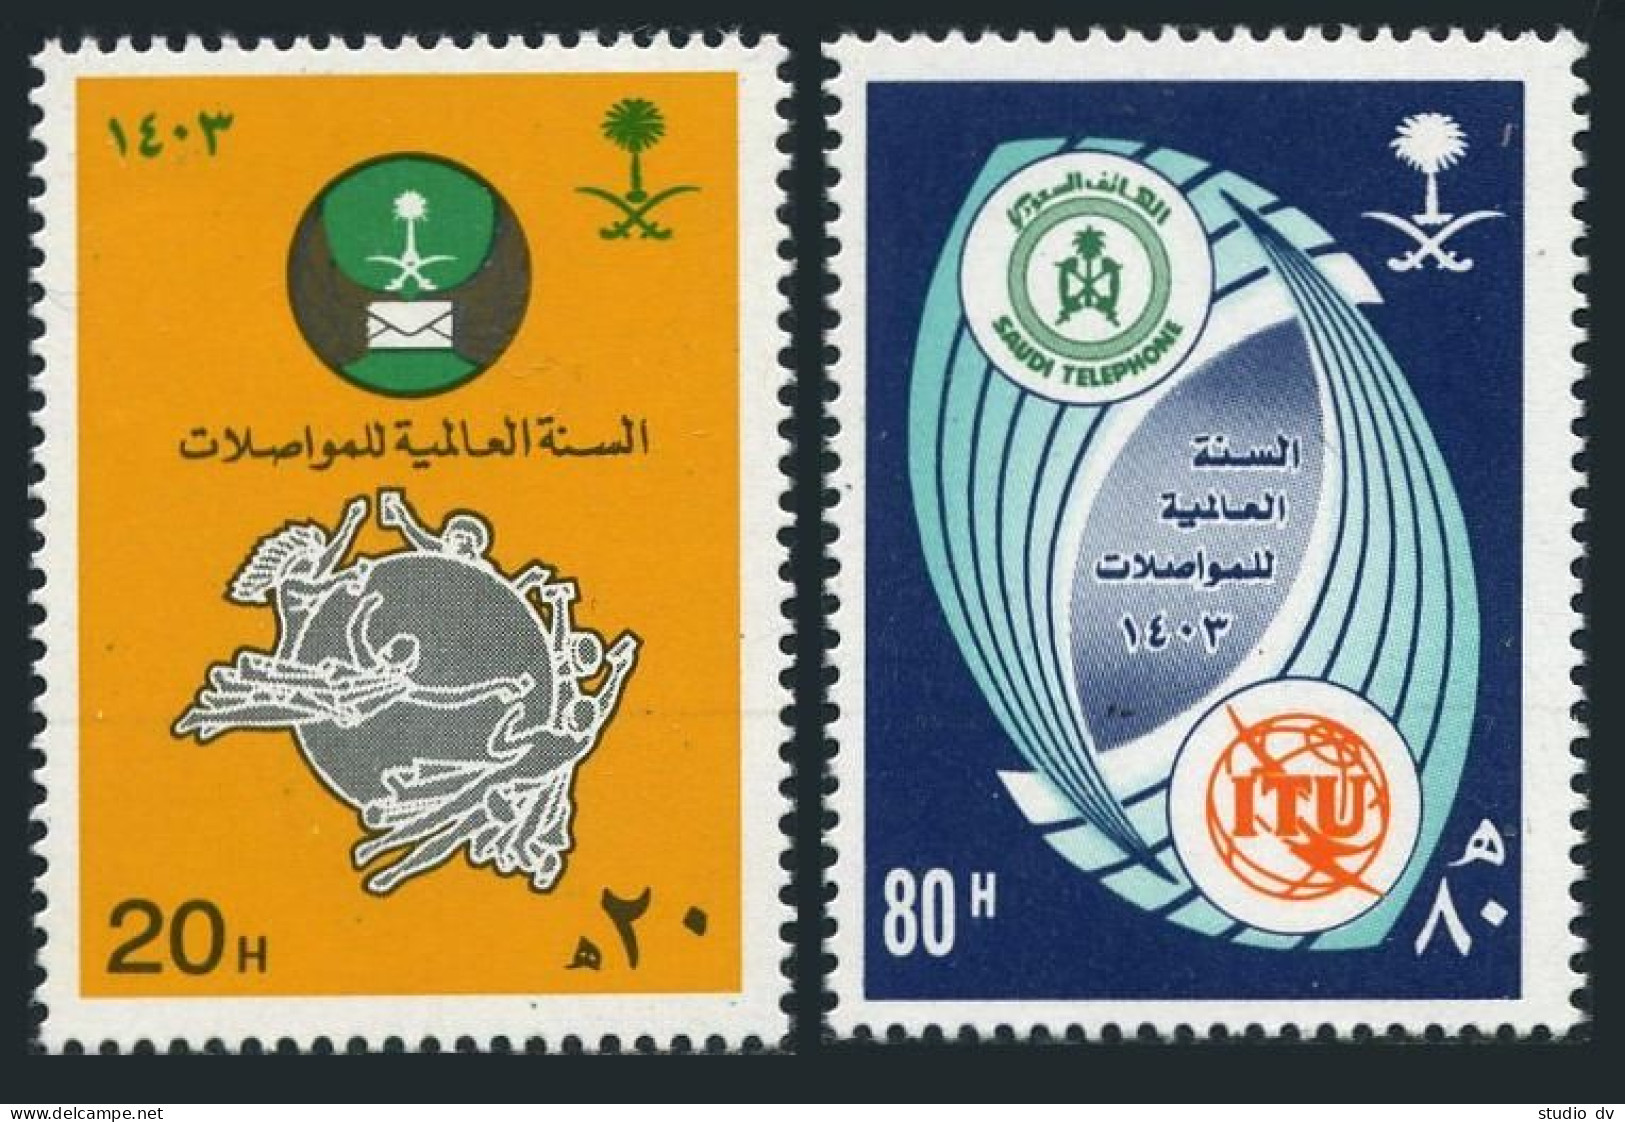 Saudi Arabia 869-870, MNH. Mi 775-776. Communications Year WCY-1983.UPU, ITU. - Arabie Saoudite